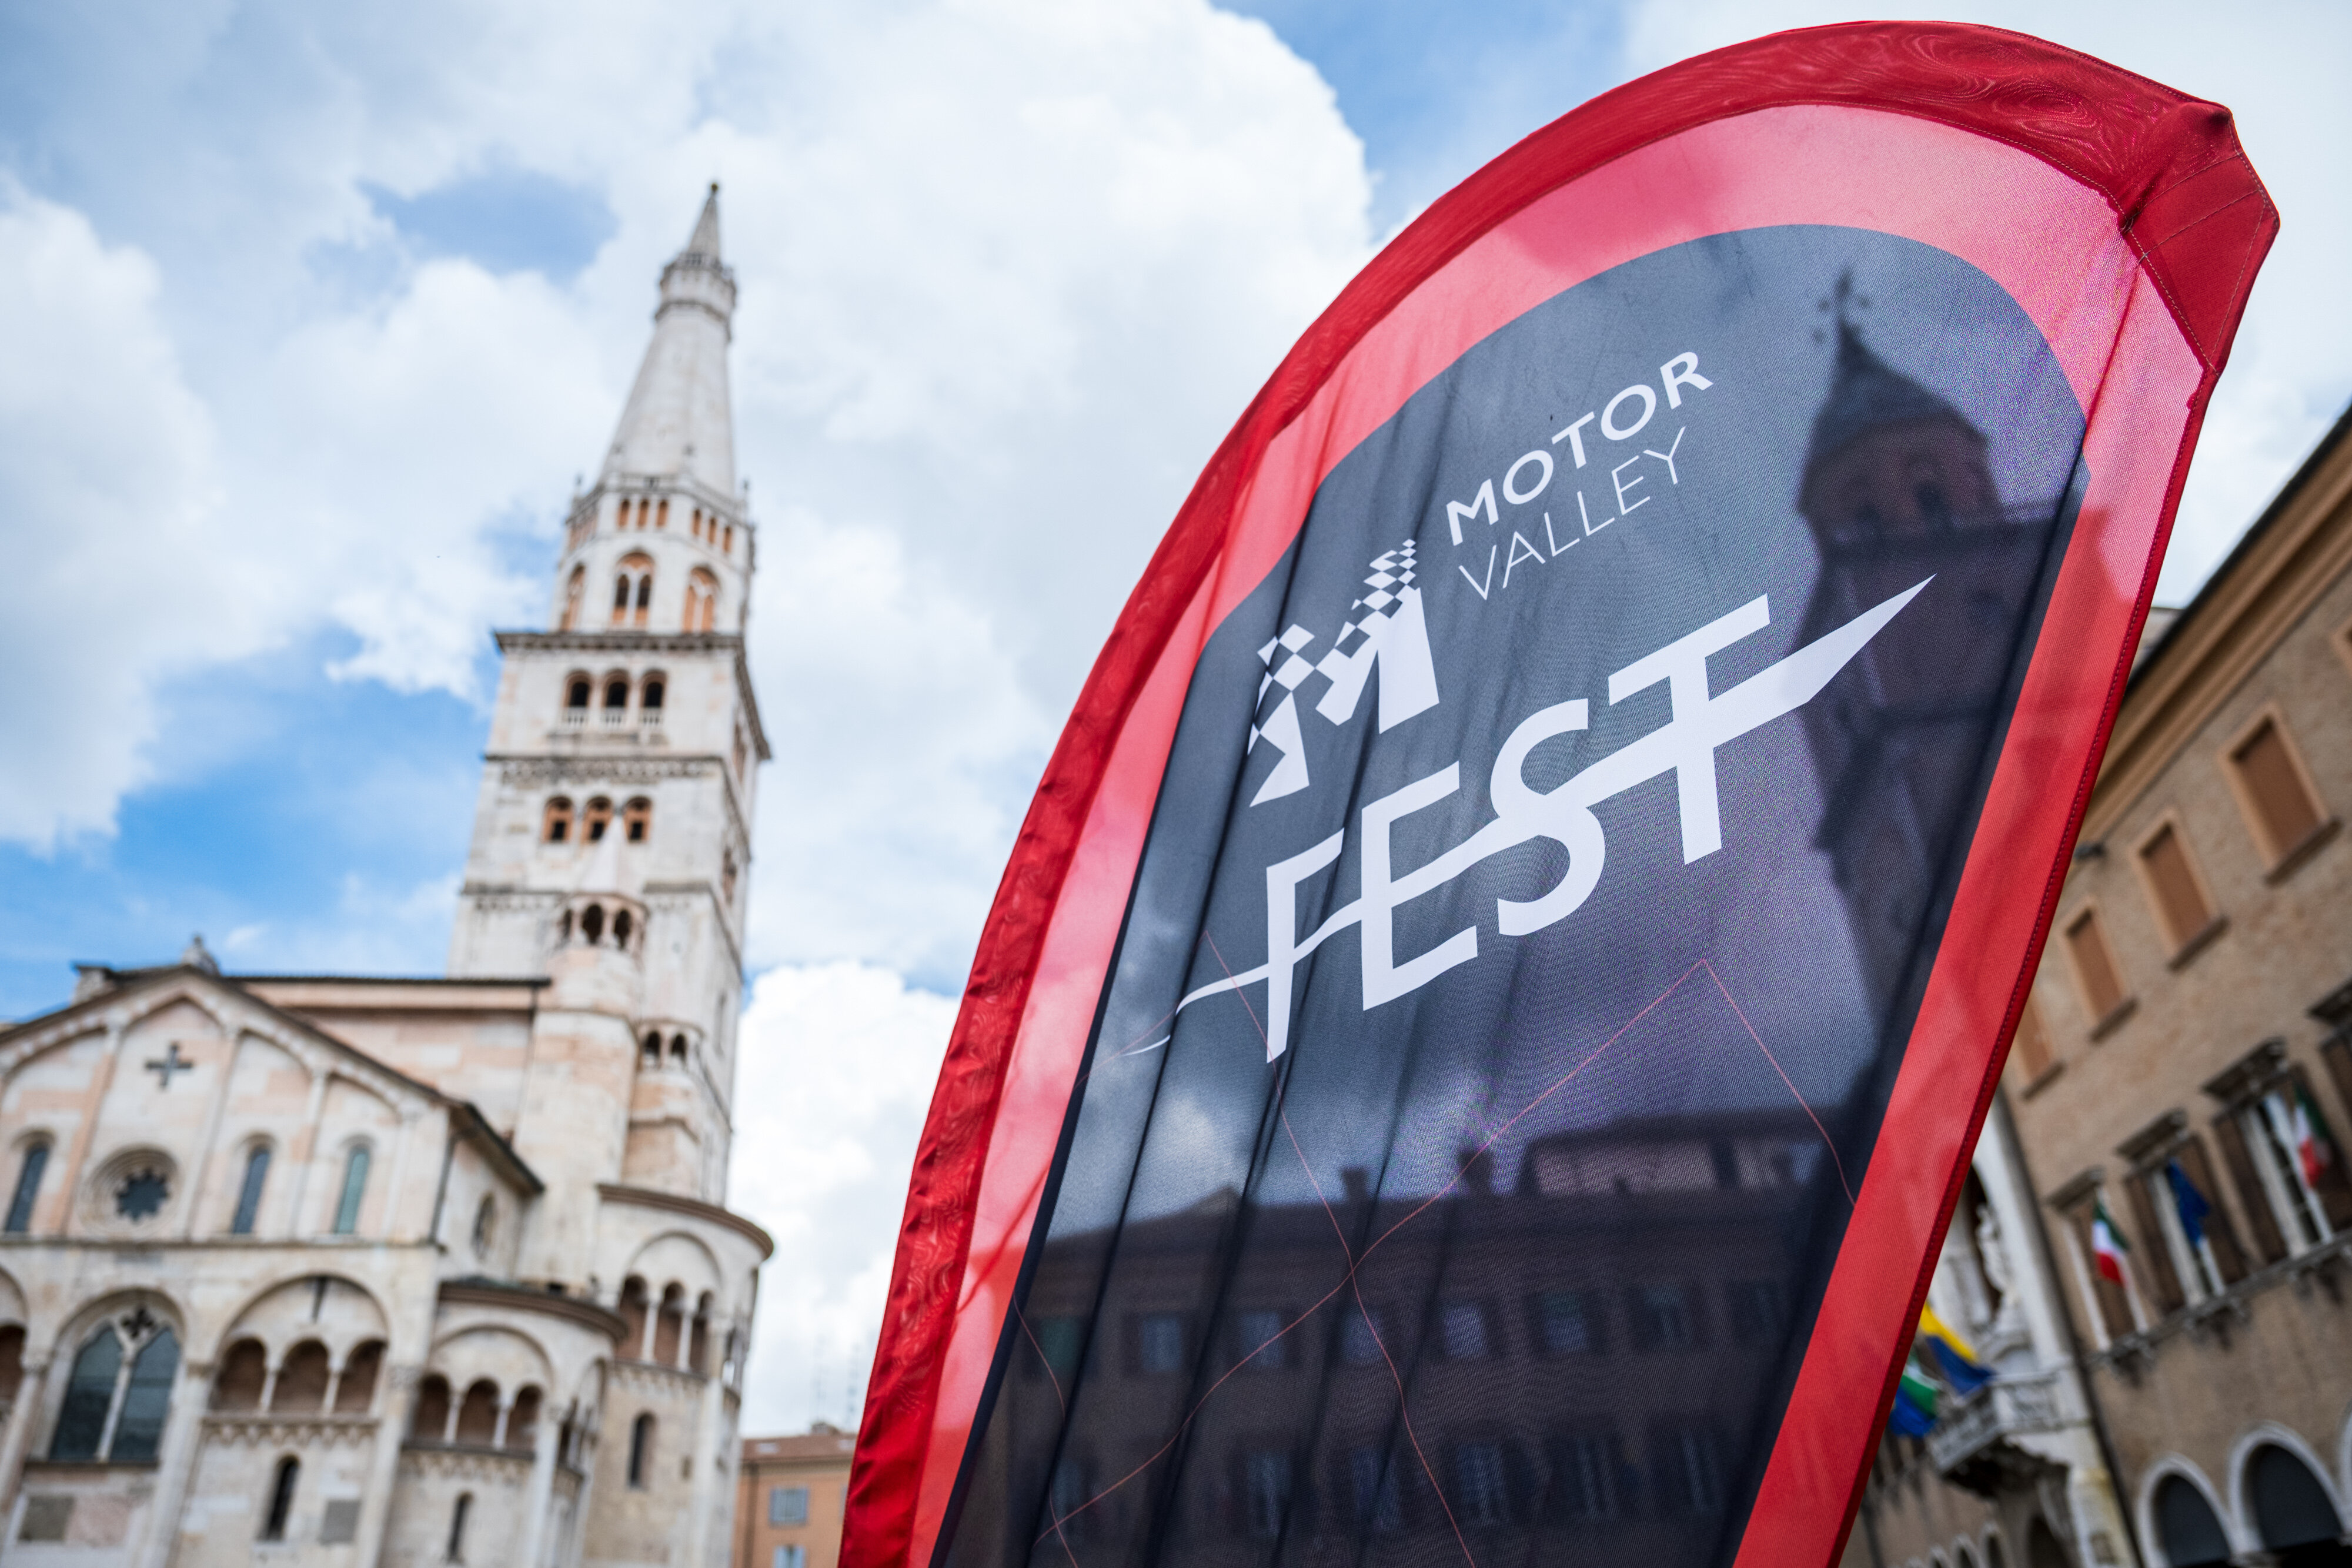 More information about "MOTOR VALLEY FEST riaccende i motori: al via la sesta edizione a Modena, dal 2 al 5 Maggio"